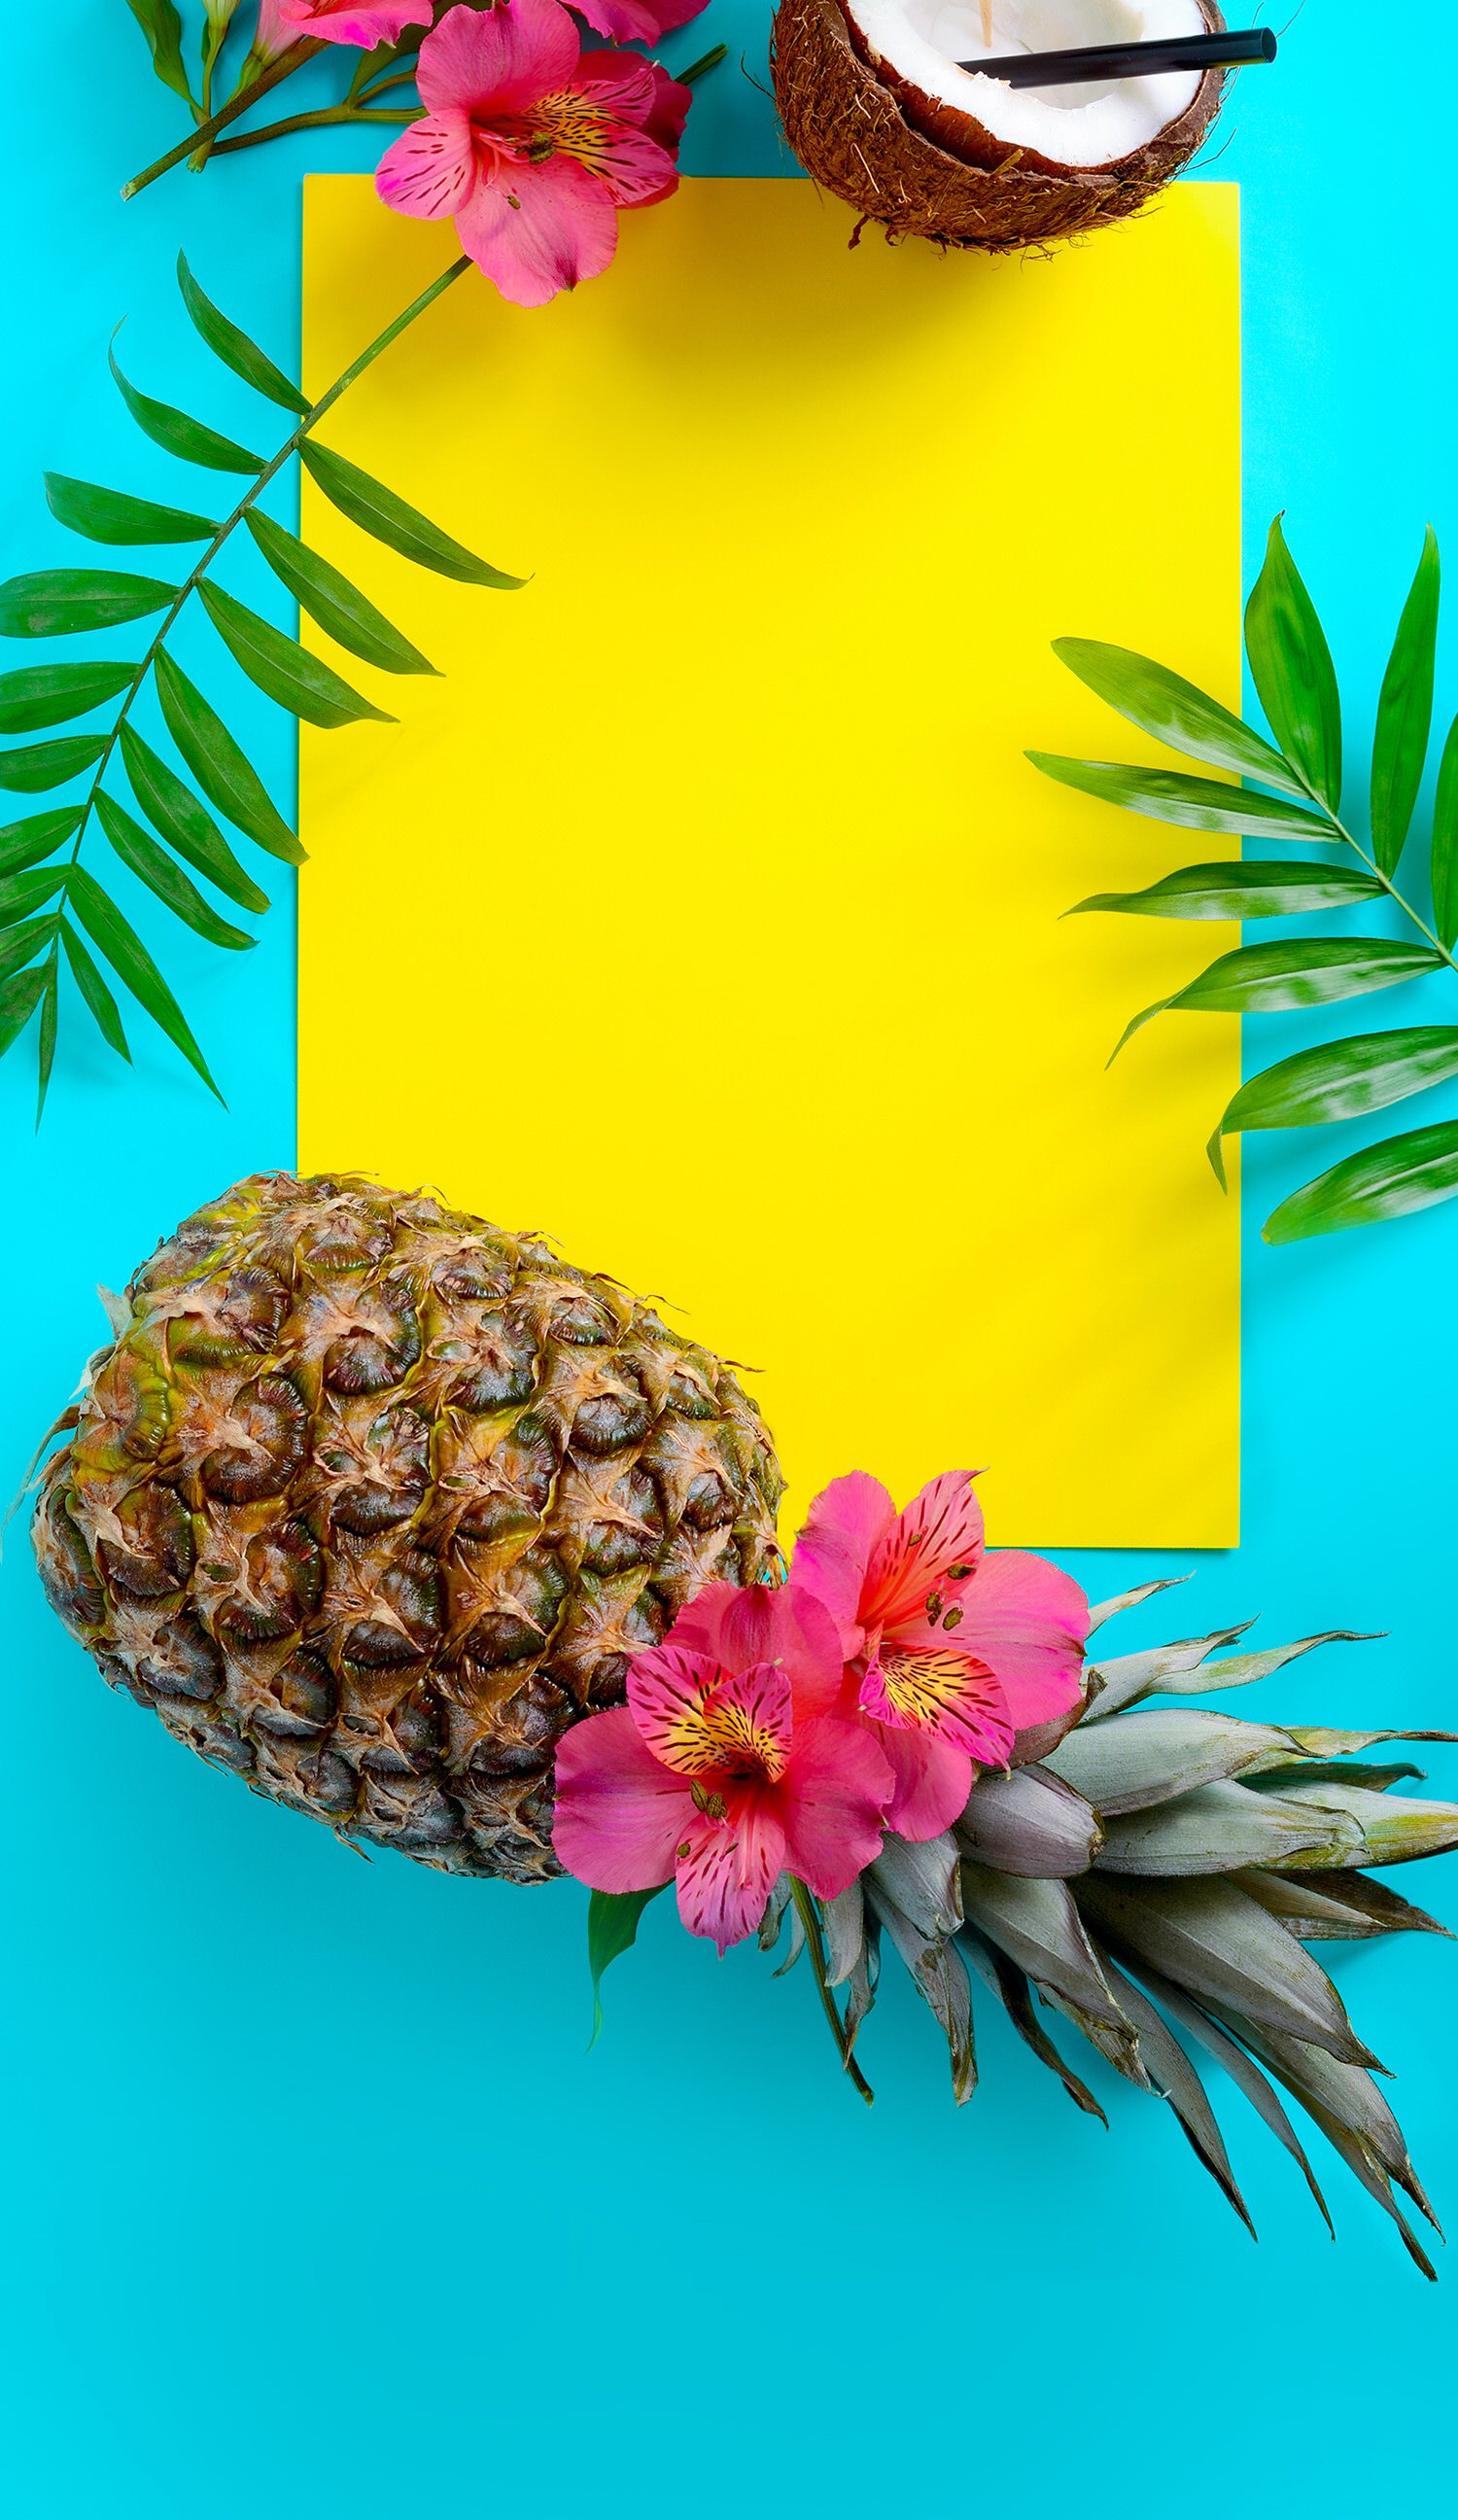 تصویر خام قشنگ و رنگارنگ میوه های تابستانی مناسب نوشتن متن انگیزشی کانال